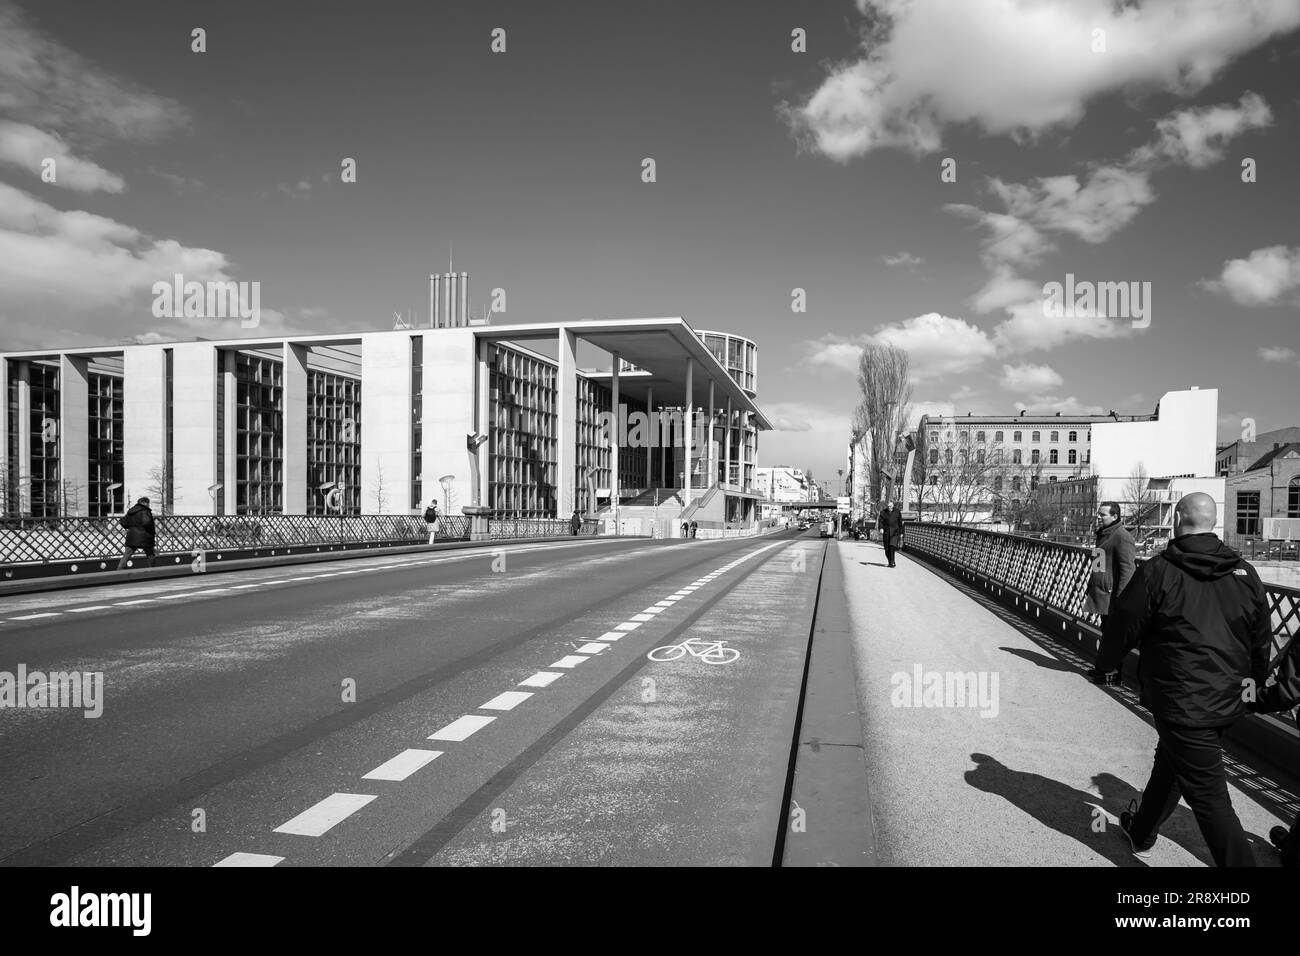 Berlin, Allemagne - 18 avril 2023 : vue en noir et blanc de divers bâtiments gouvernementaux à Berlin Allemagne Banque D'Images